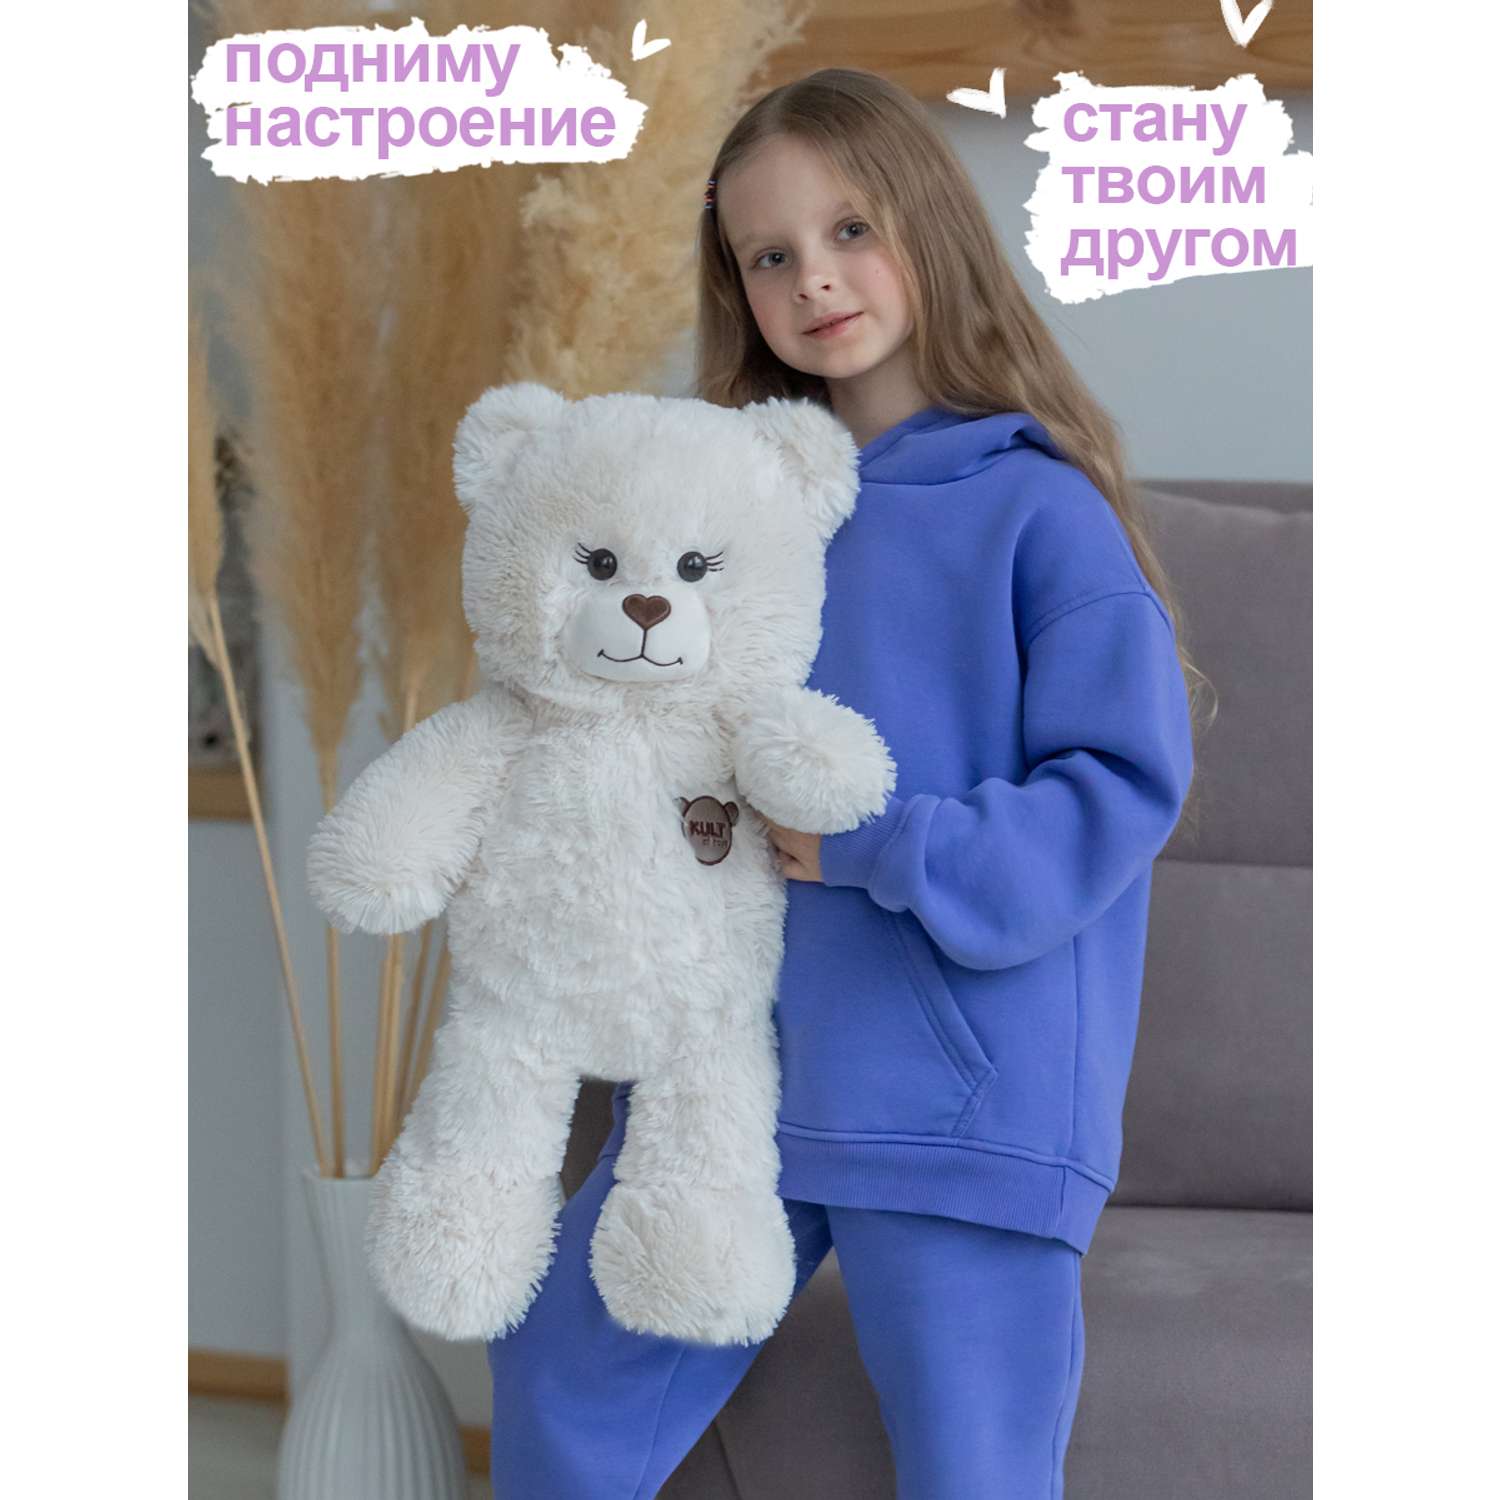 Мягкая игрушка KULT of toys Плюшевый медведь Color 65 см цвет бежевый - фото 3